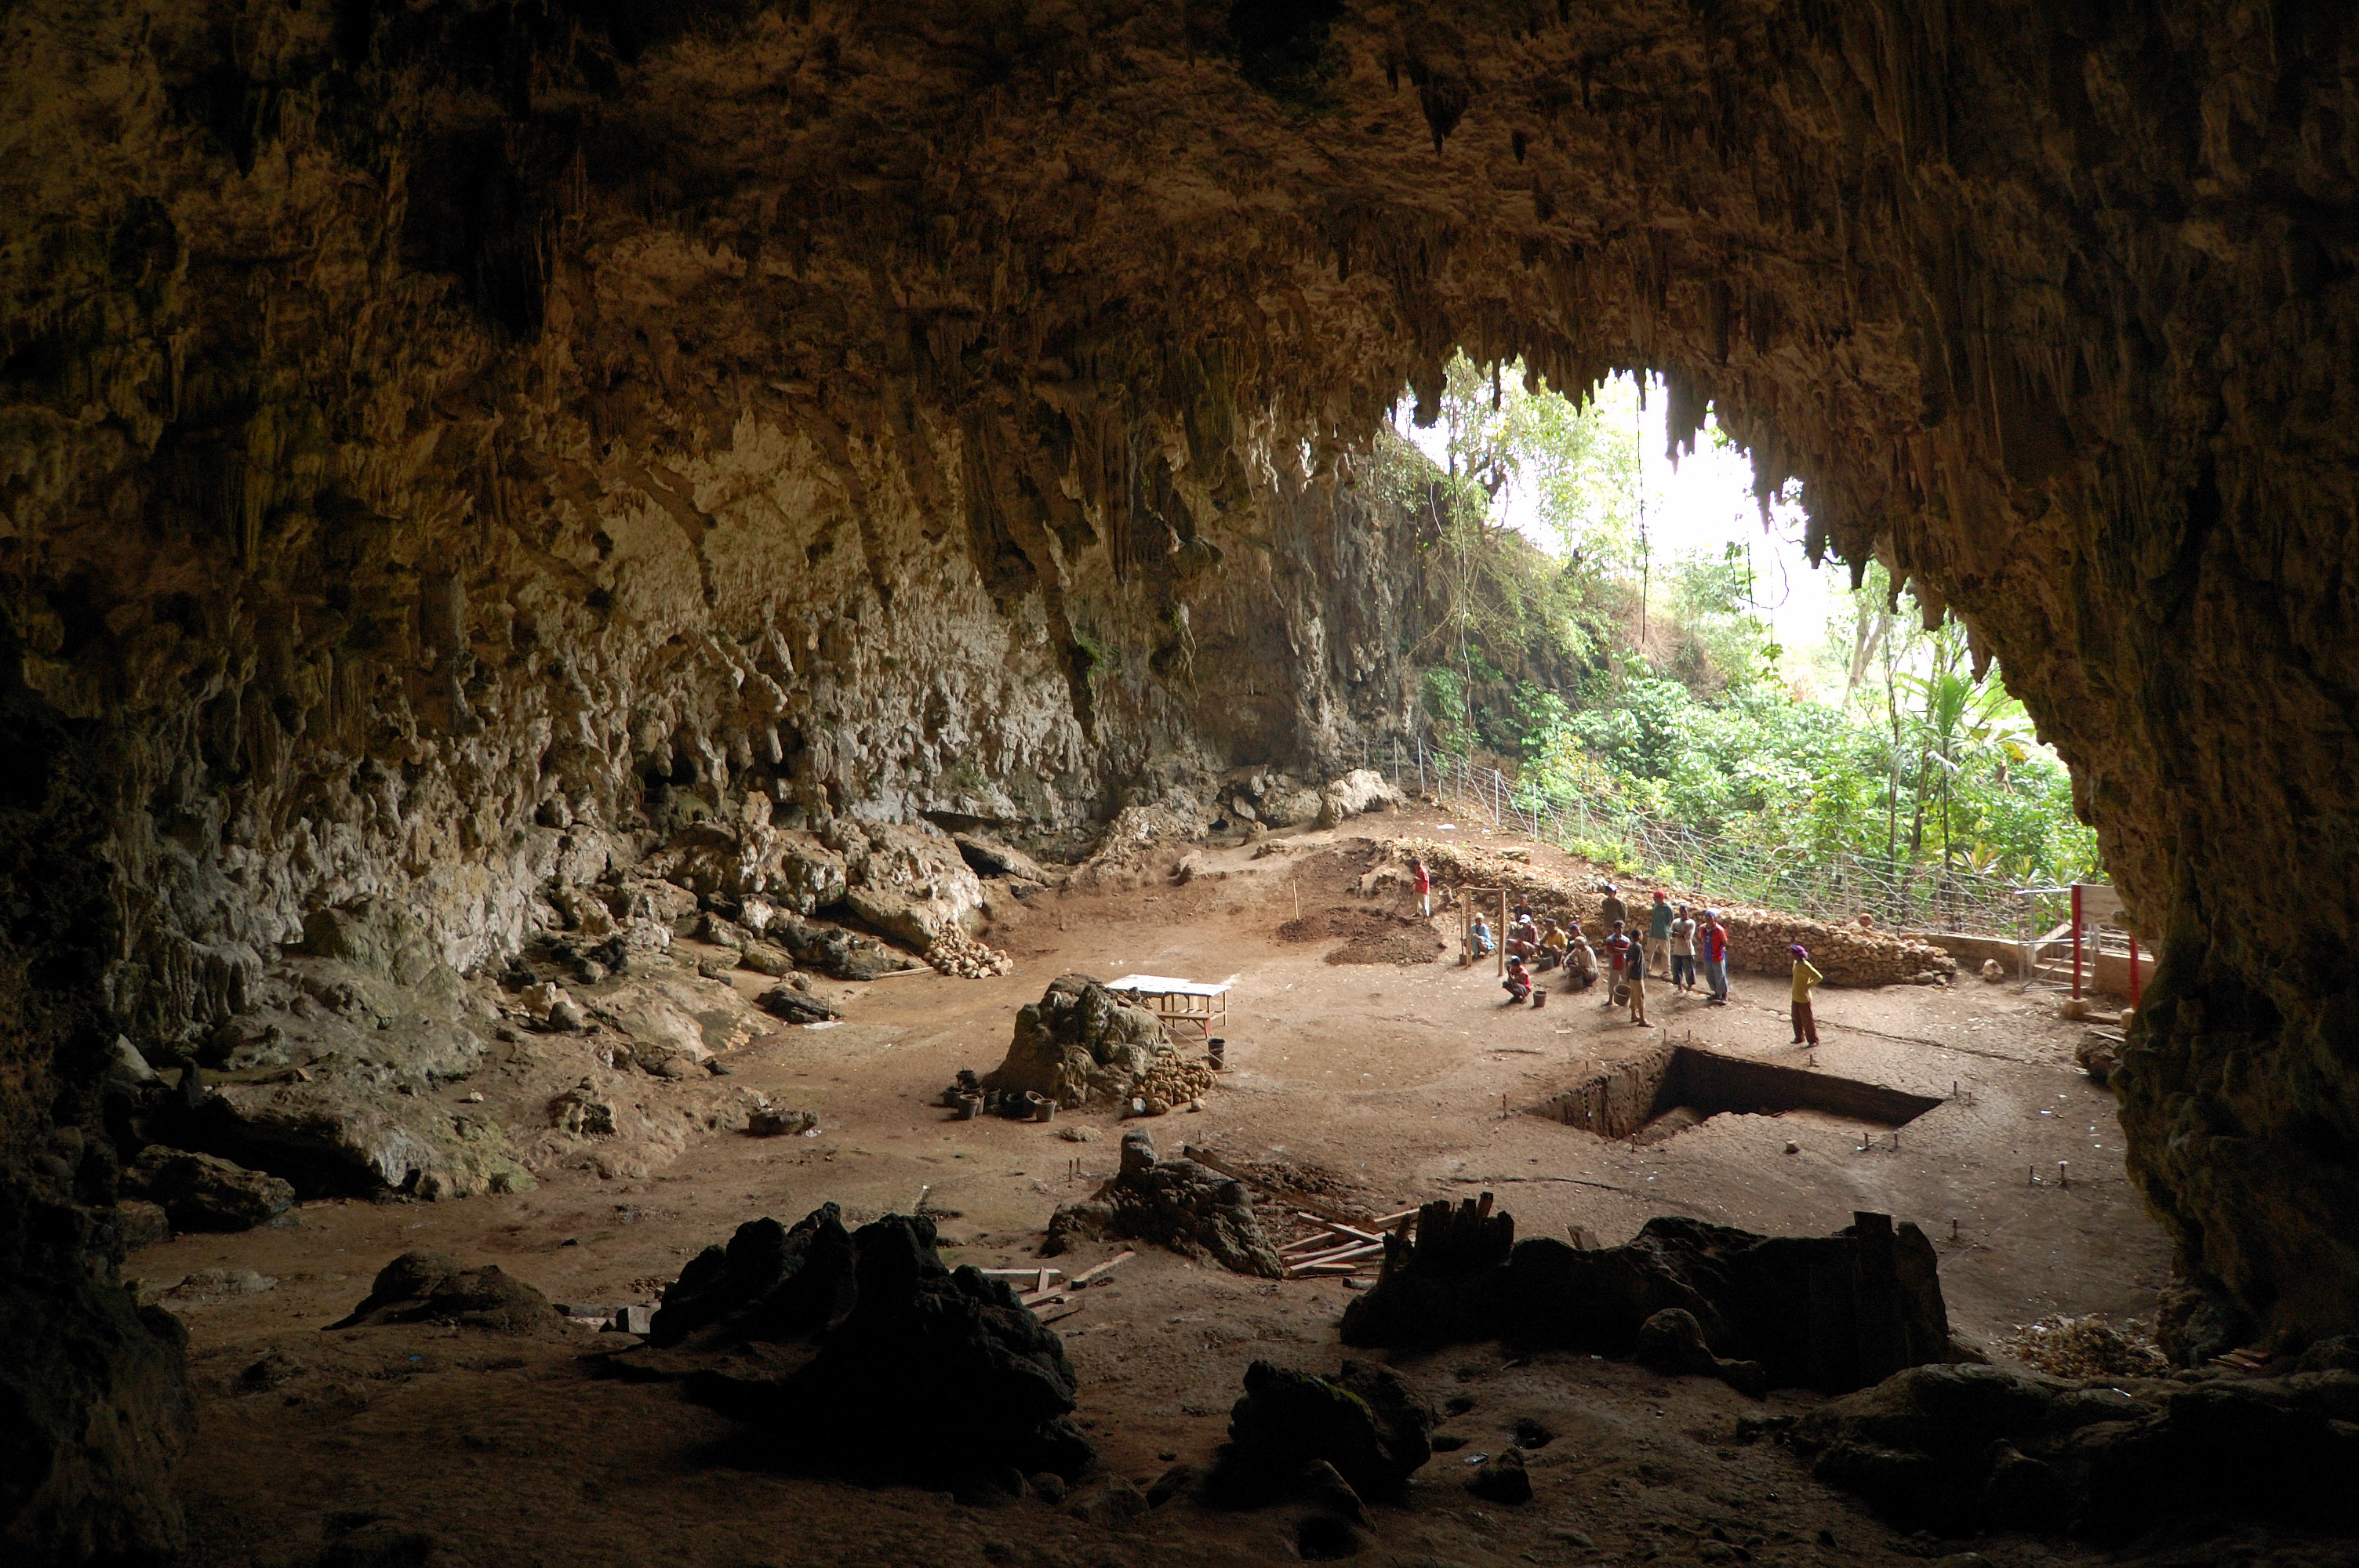 Jeskyně Lian Bua - místo, kde v roce 2003 byly nalezeny kosti „hobitů“, později uznaných jako pozůstatky H. floresiensis. Kredit: Rosino,Wikipedia.